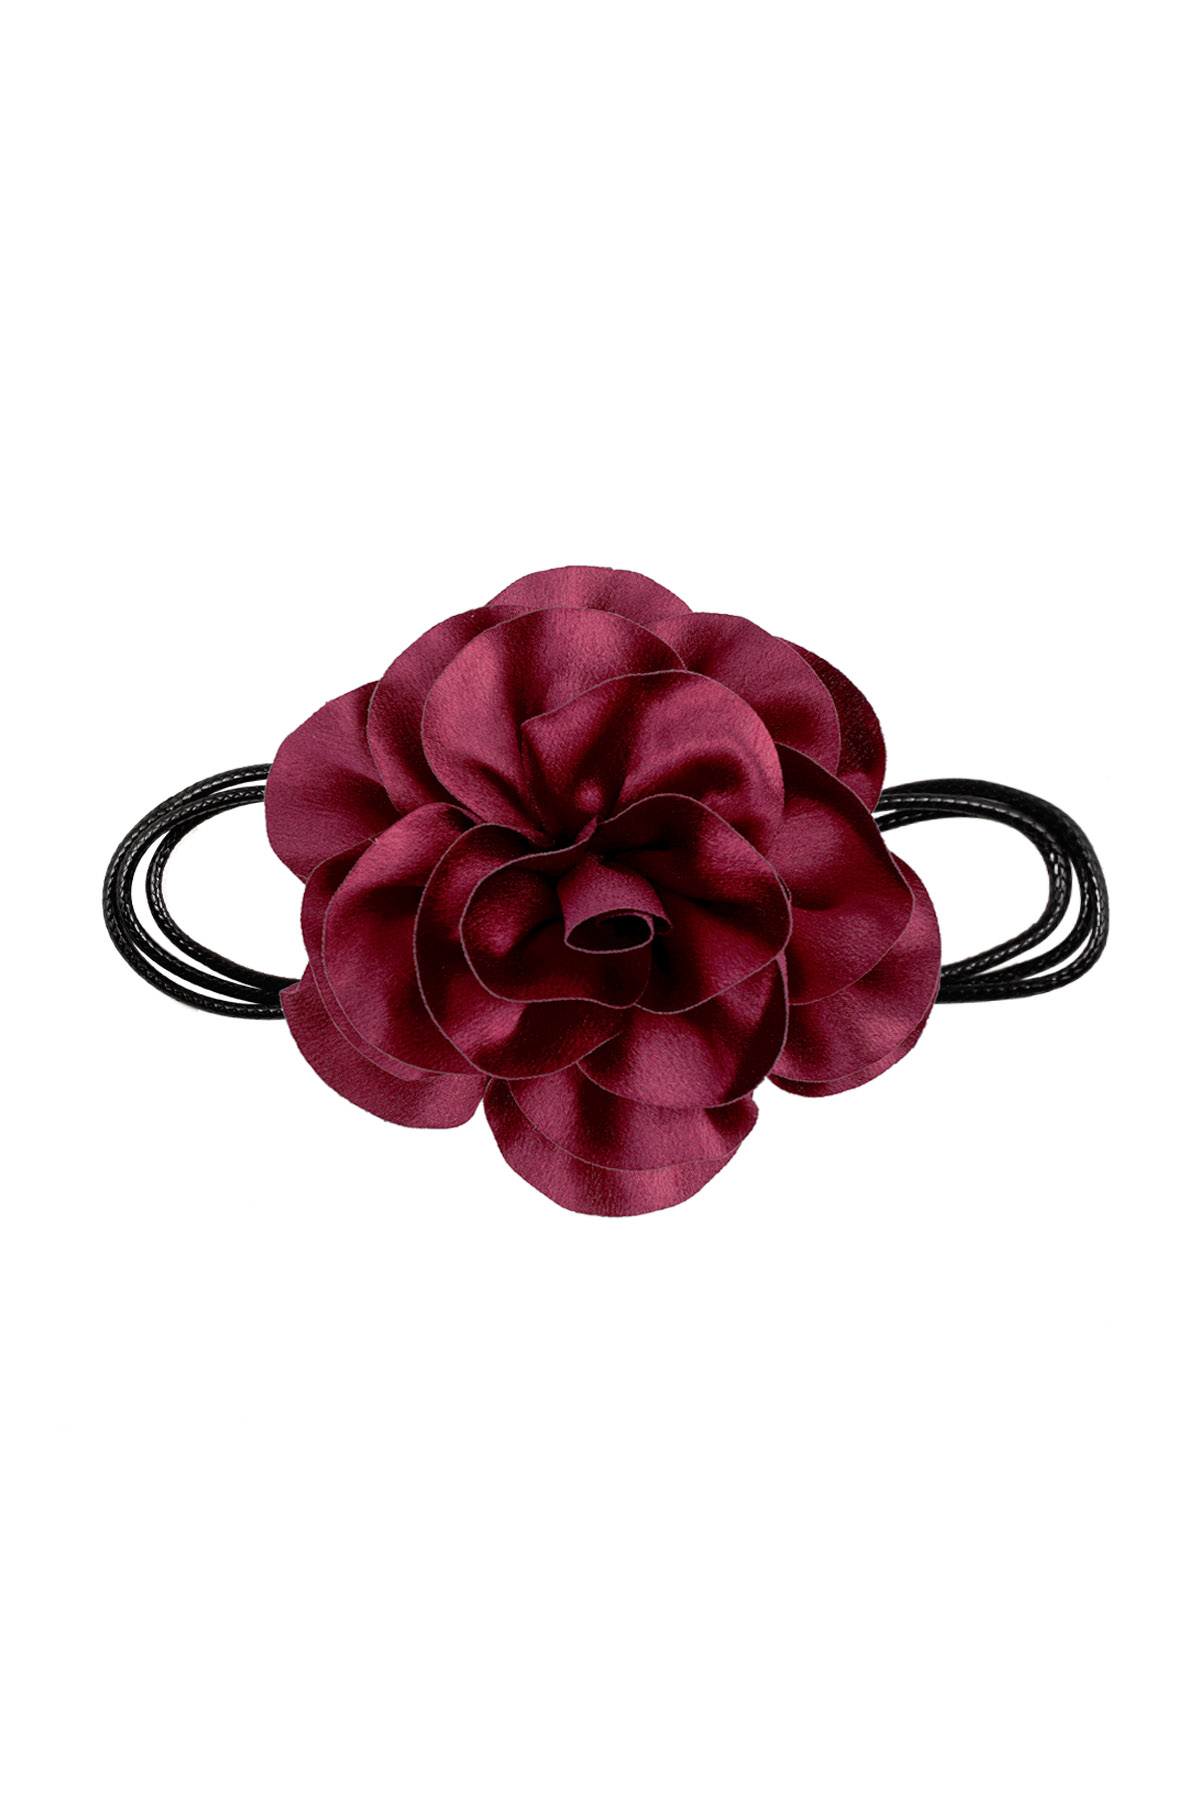 Collier corde fleur brillante - rouge foncé 